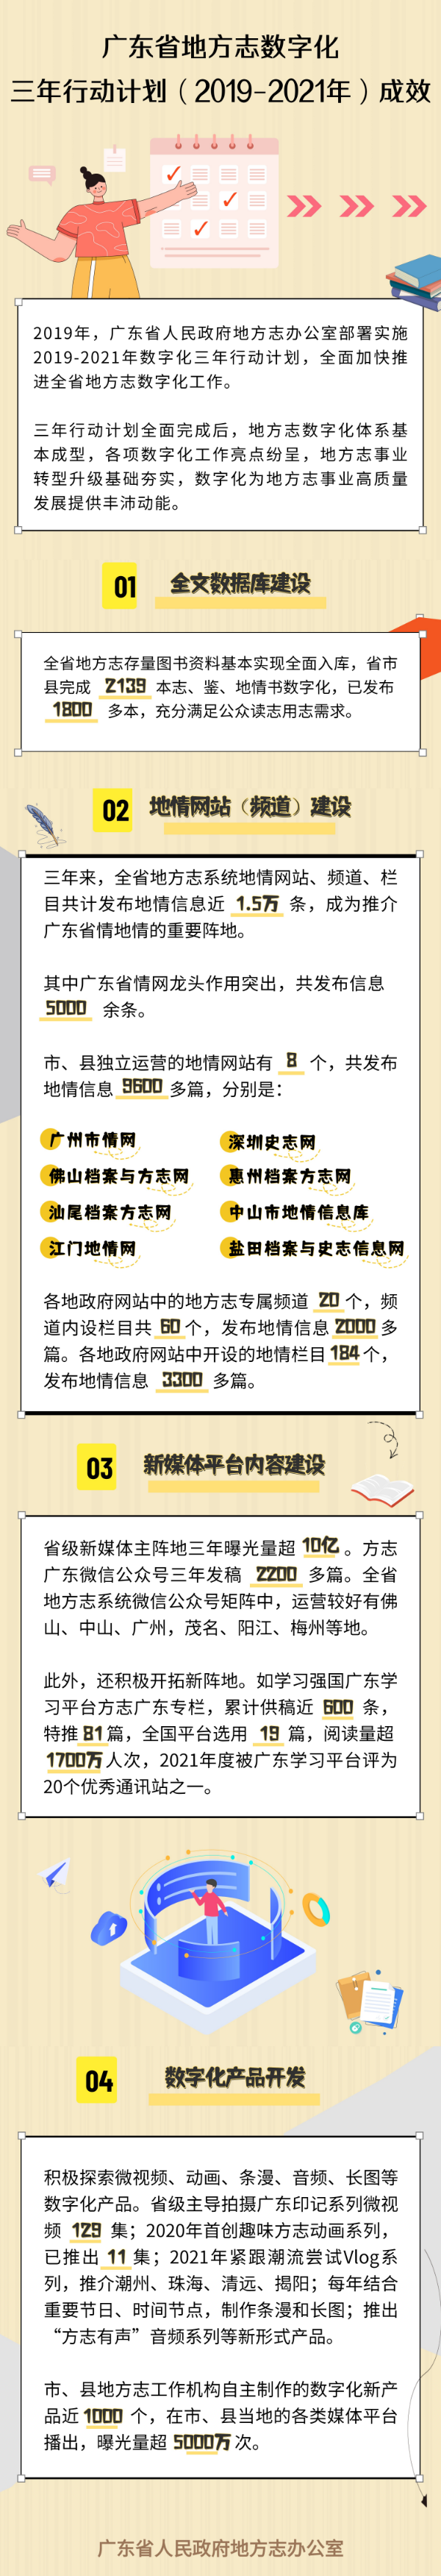 广东省地方志数字化三年行动计划（2019-2021年）成效.jpg